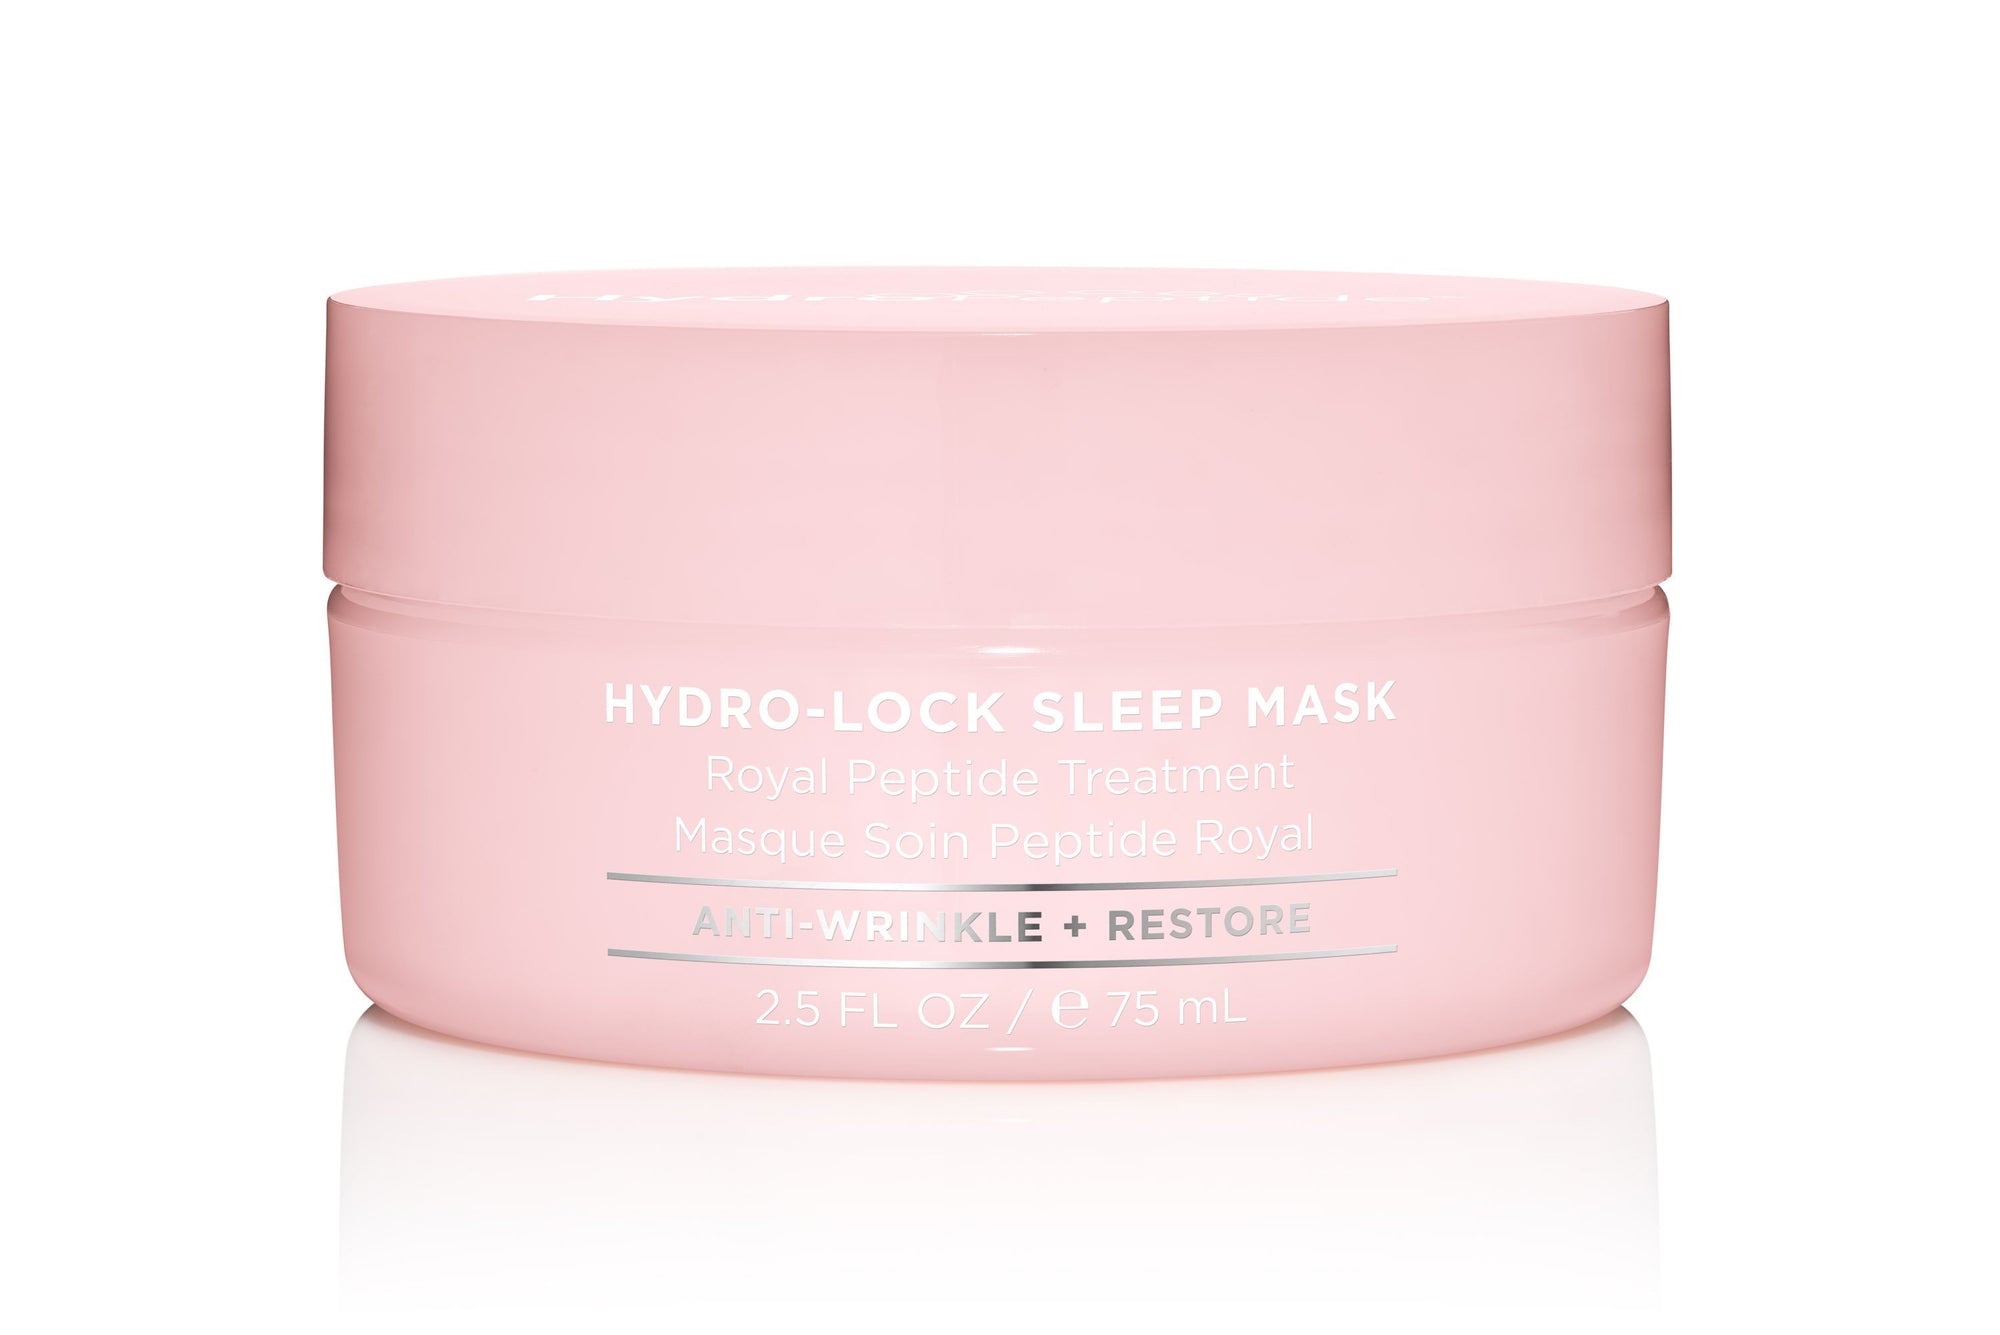 Hydro-lock Sleeping Mask abcclinc